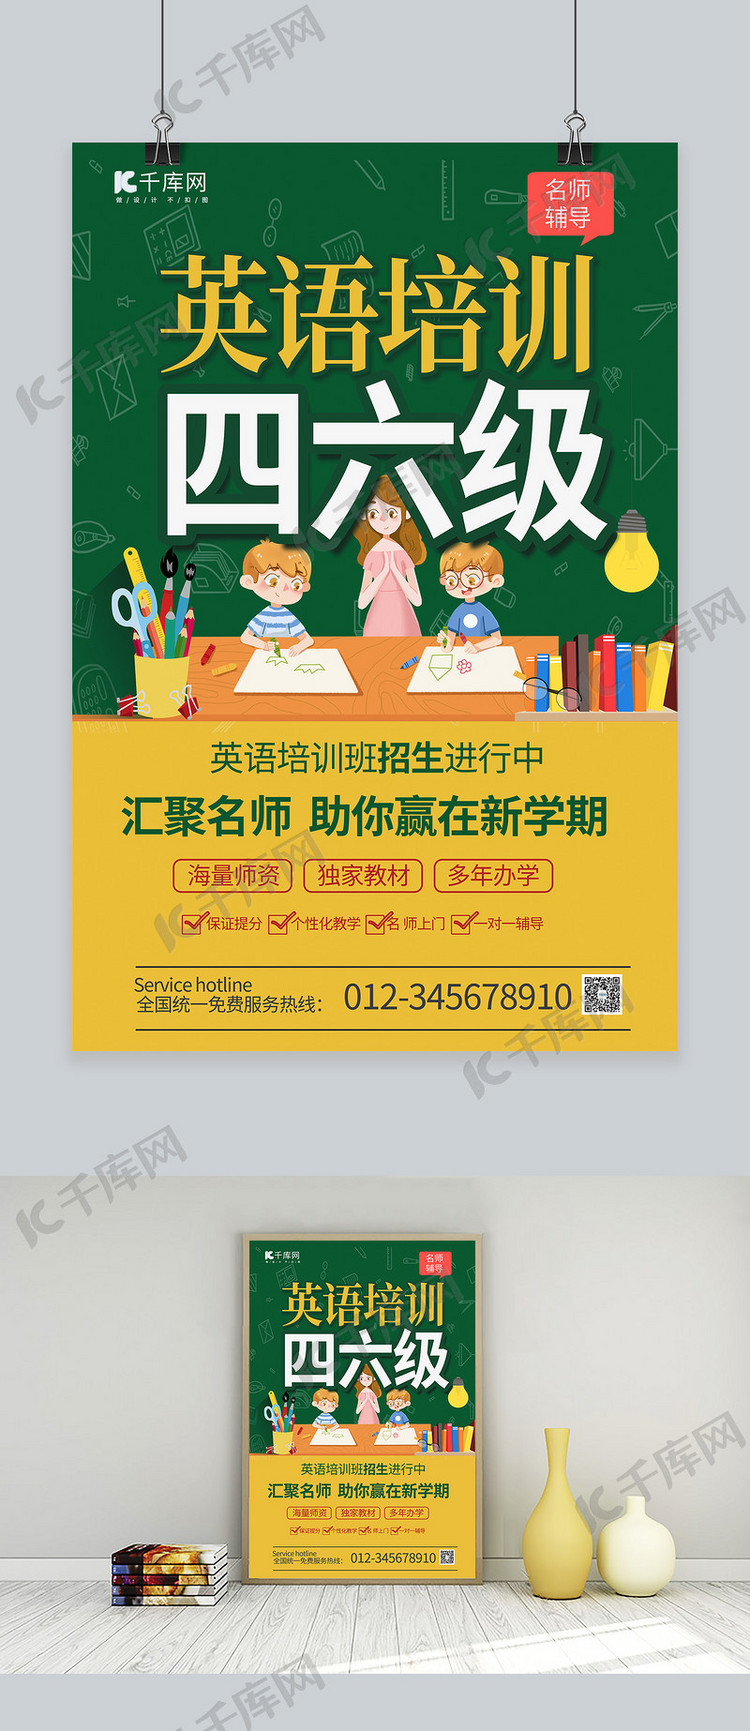 英语培训四六级教师学生笔书桌橙绿色简约风海报